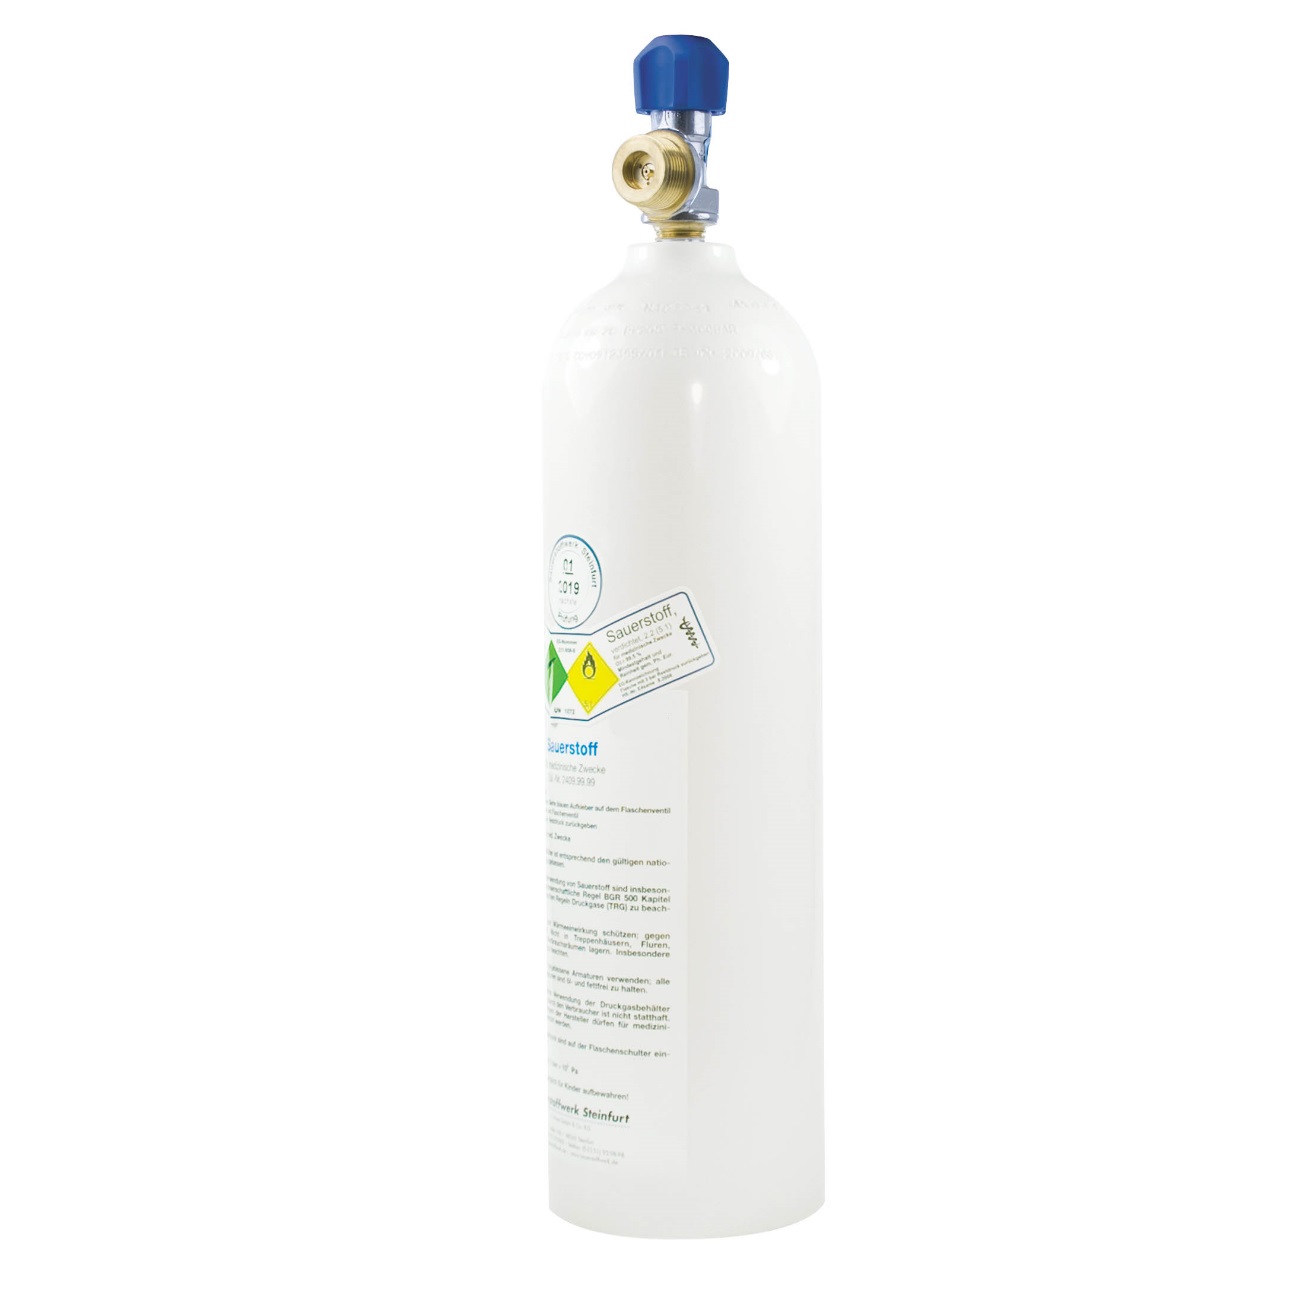 Sauerstoffflasche 2 Liter | Leichtaluminium | gefüllt mit 200 bar medizinischem Sauerstoff